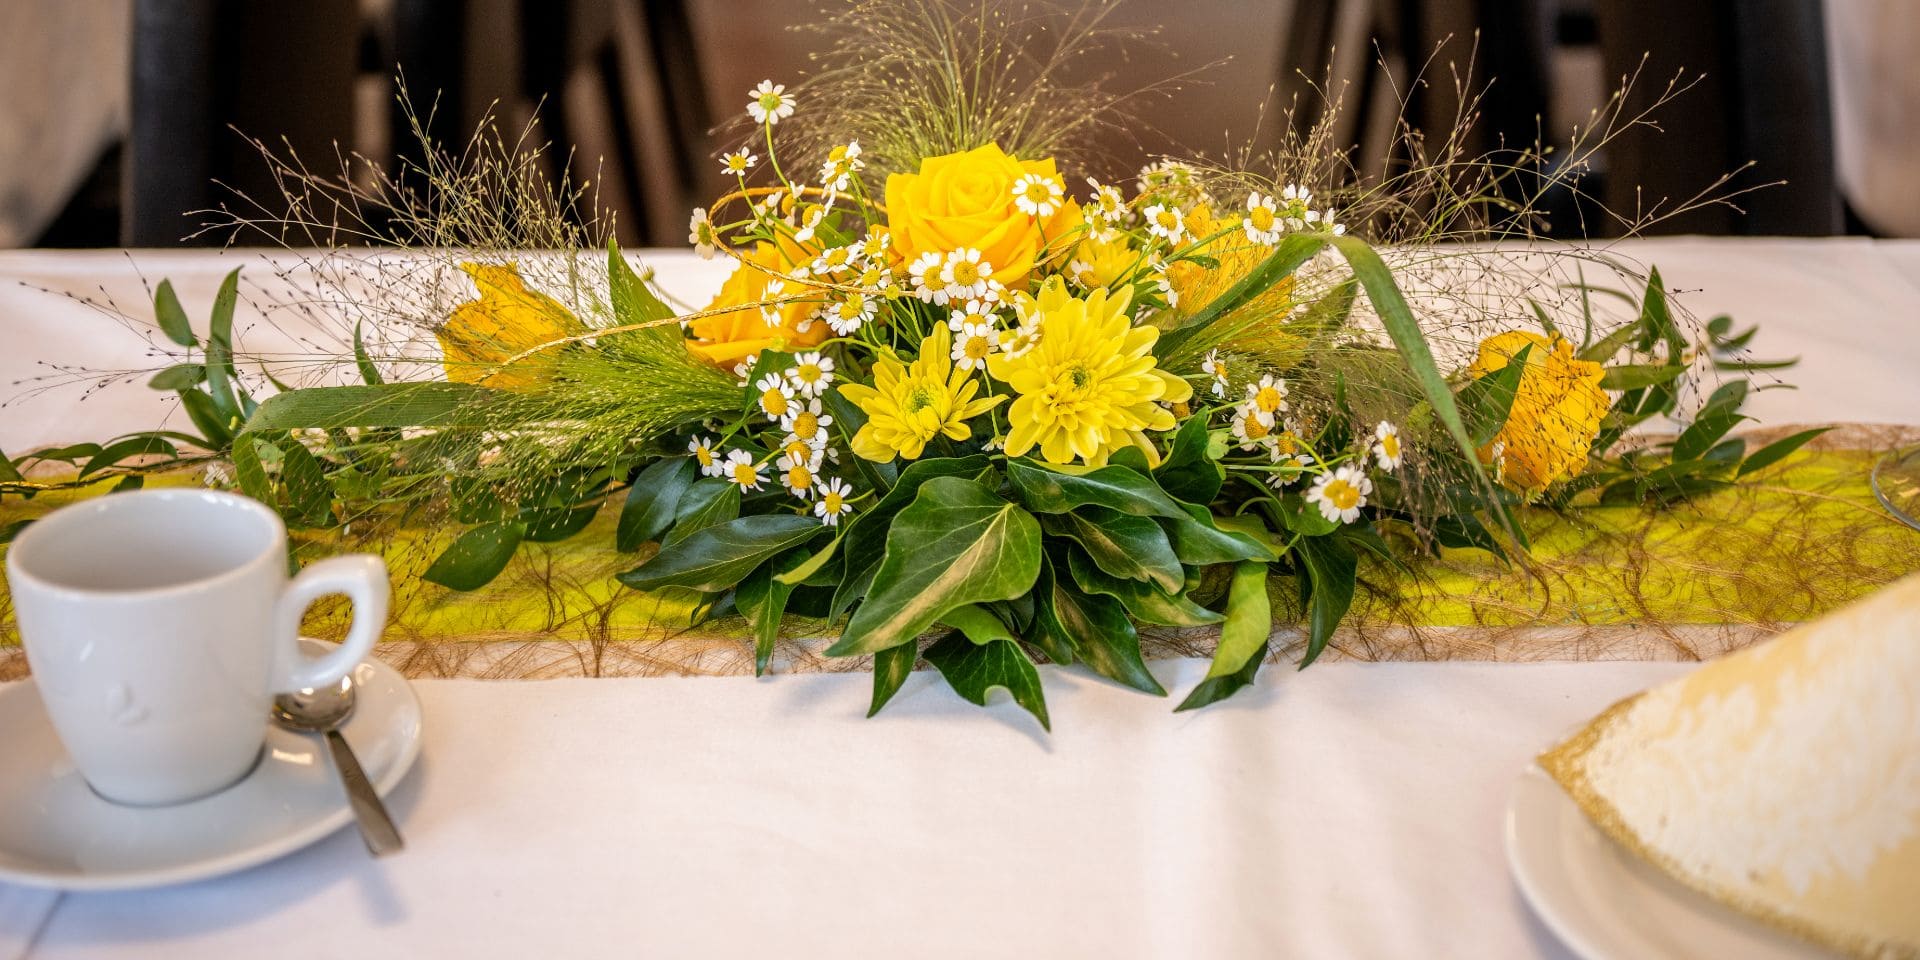 Eine Tasse und gelbe Blumen als Dekoration auf einem TIsch